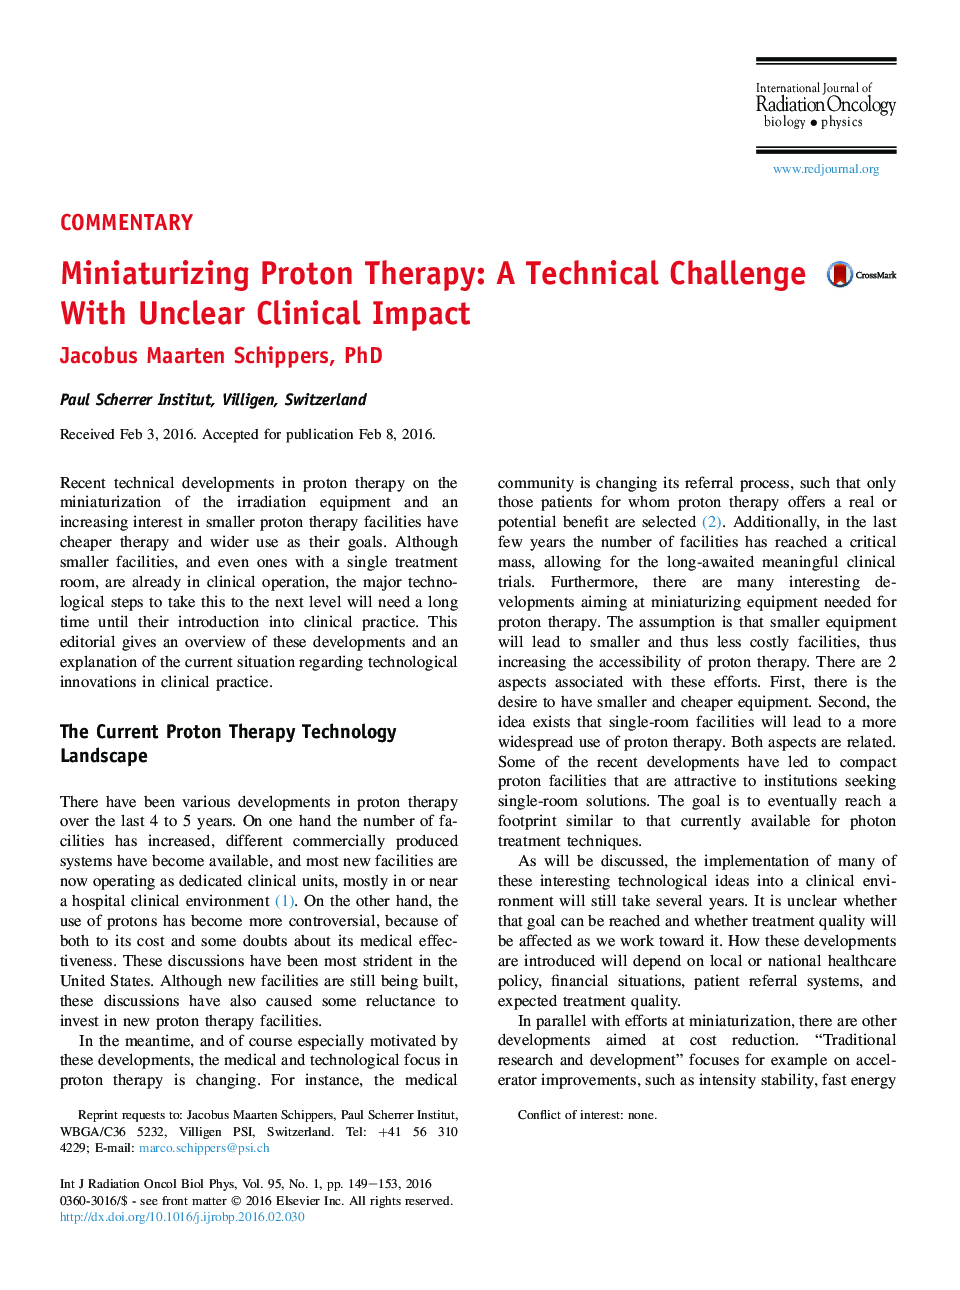 درمان کمردرد پروتون: یک چالش فنی با اثرات نامطلوب بالینی 